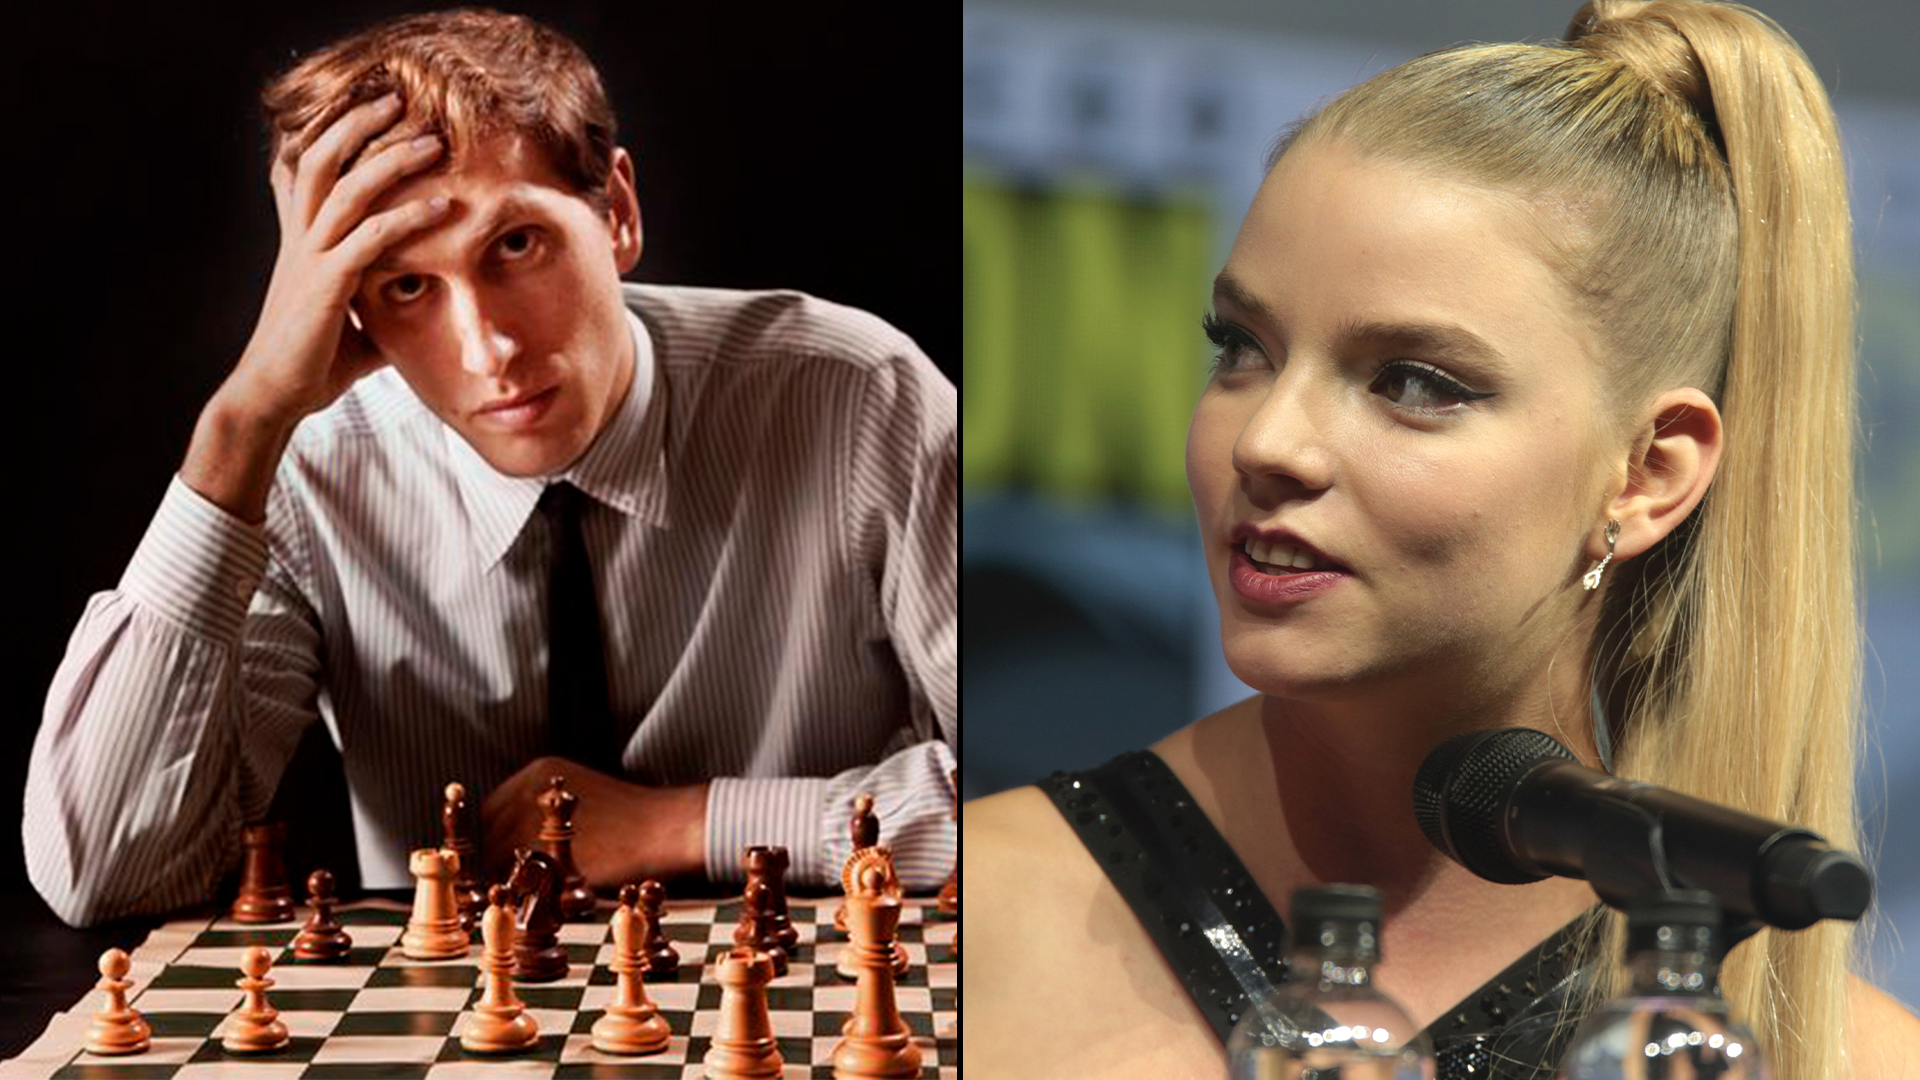 La historia del niño prodigio -Fischer fue campeón de ajedrez de los Estados Unidos a los 14- y la niña prodigio de la serie Gambito de Dama se tocan en varios puntos. El genio de Bobby no deja de ser inspirador a casi medio siglo de su consagración